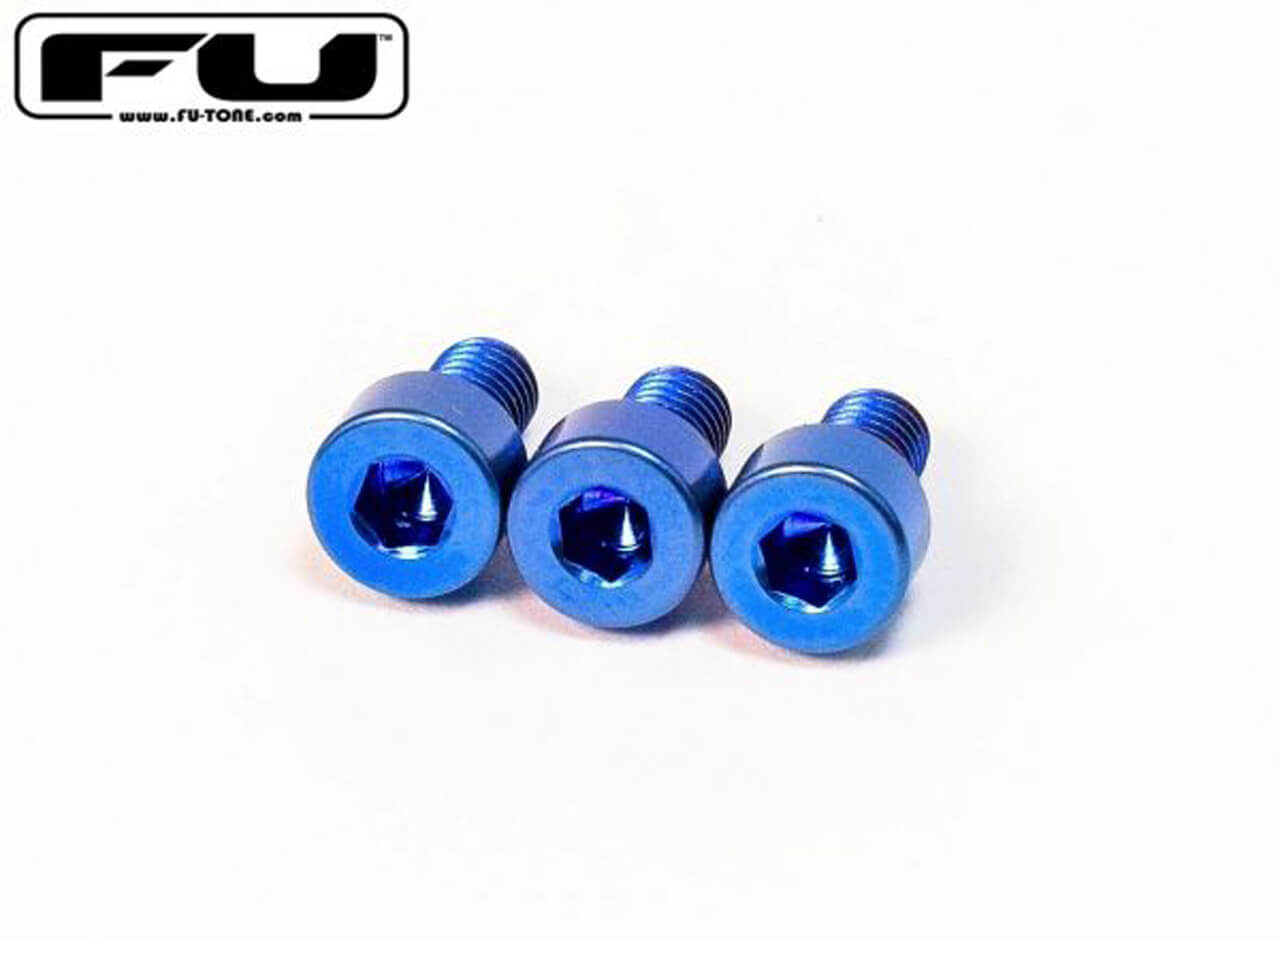 FU-Tone(エフユートーン) Titanium Nut Clamping Screw Set BLUE (ナットキャップマウントスクリュー)